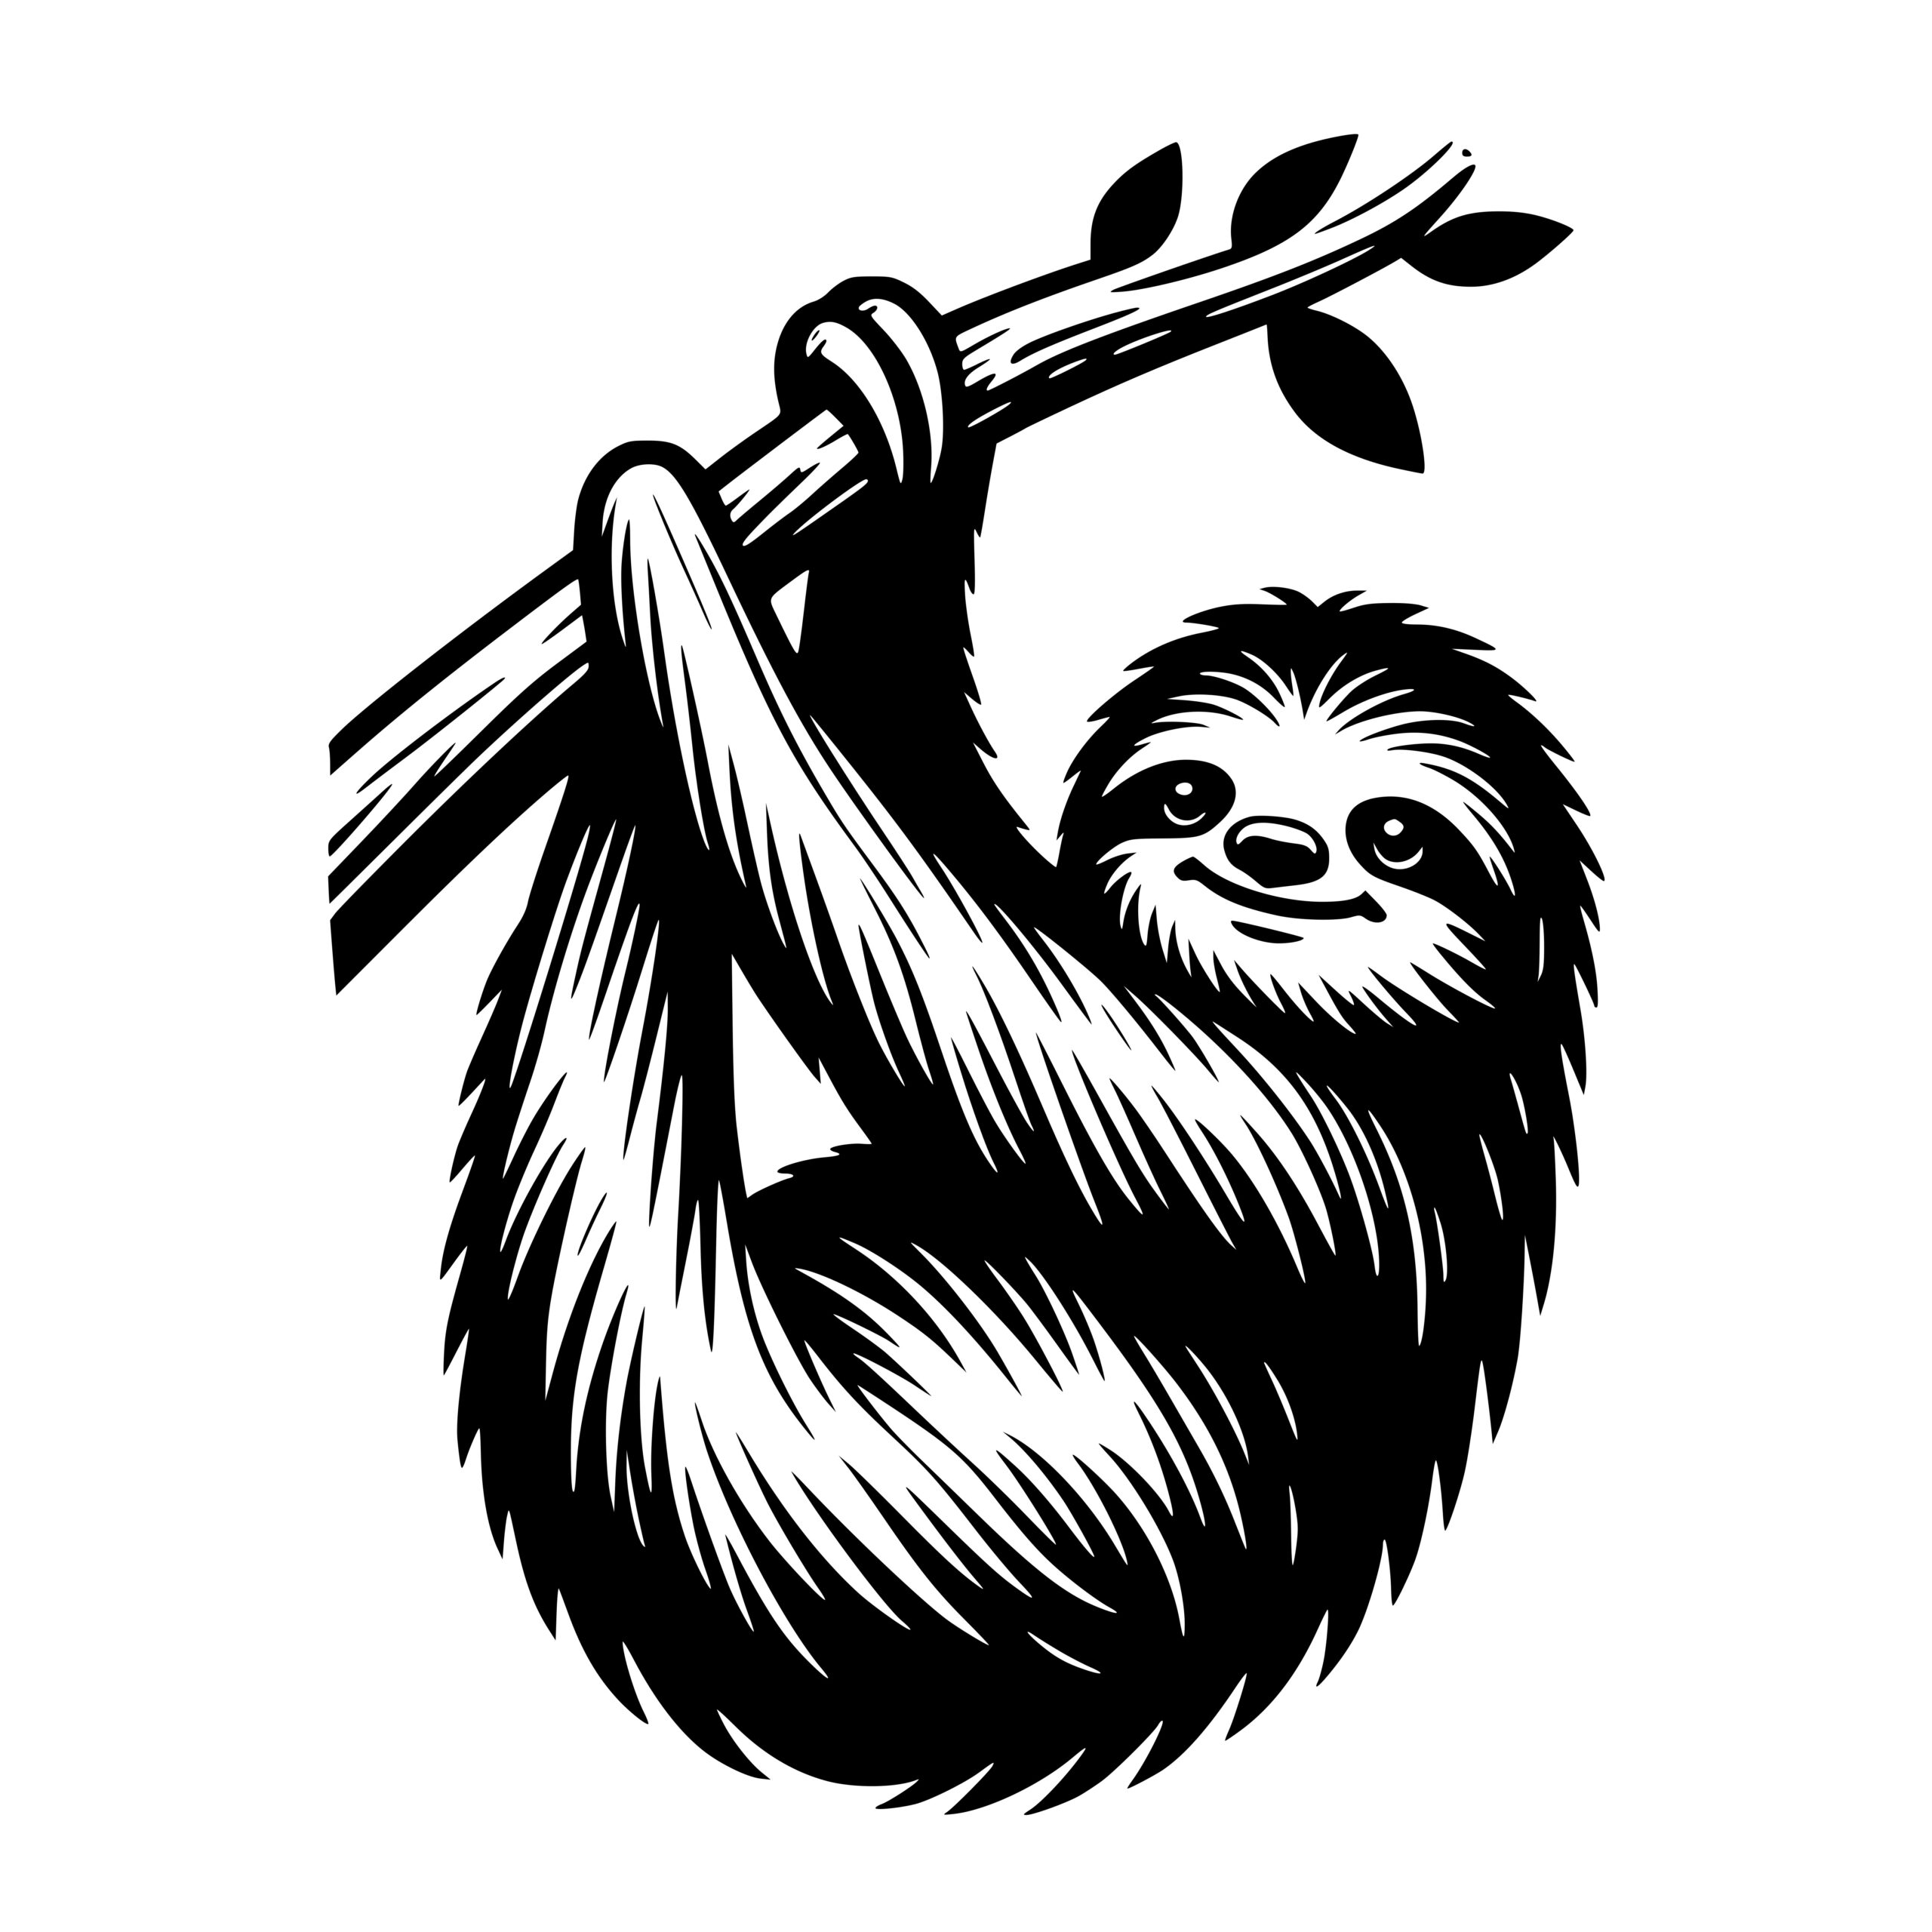 Chillin’ Sloth SVG File for Cricut, Laser, Silhouette, Cameo